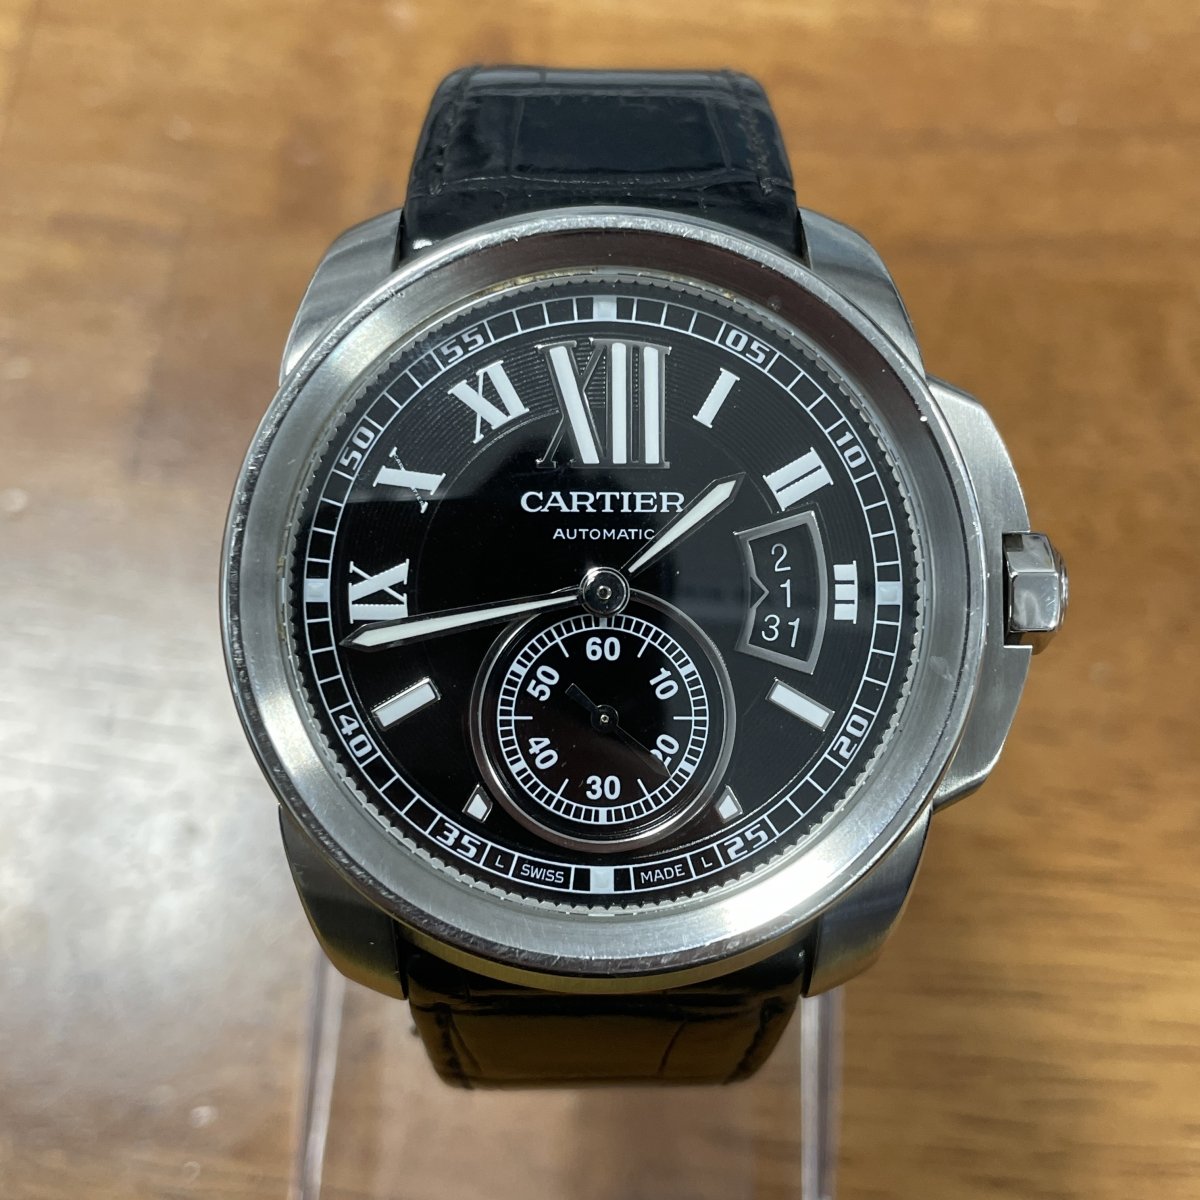 カルティエの3389 カリブルドゥカルティエ 革ベルト 自動巻き時計の買取実績です。